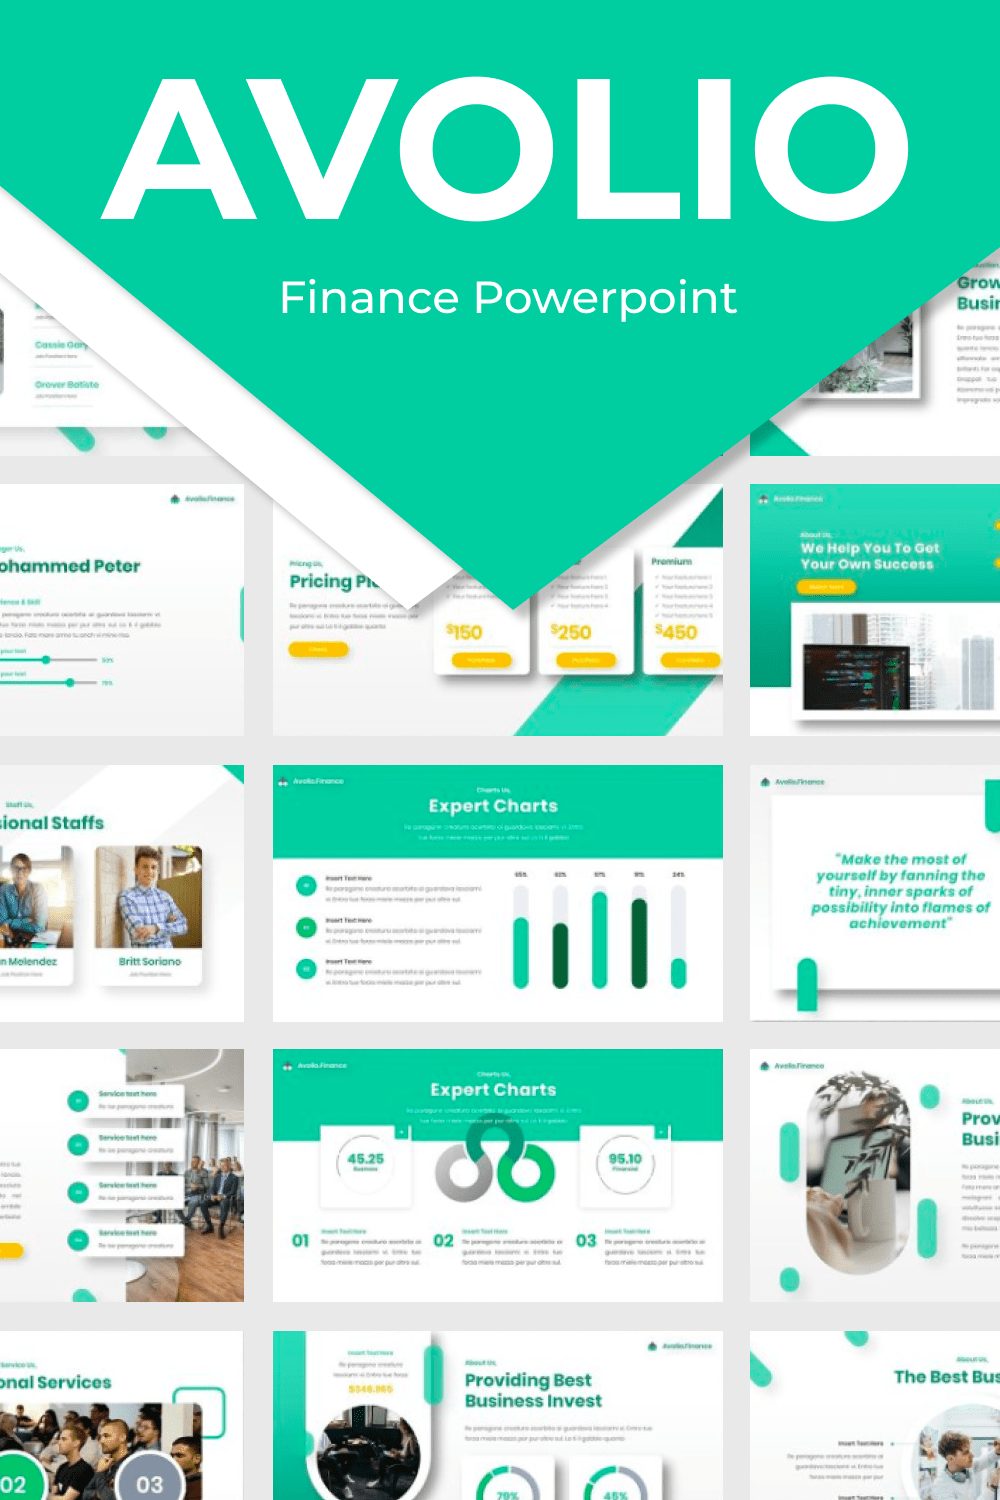 Avolio Finance Powerpoint Pinterest.